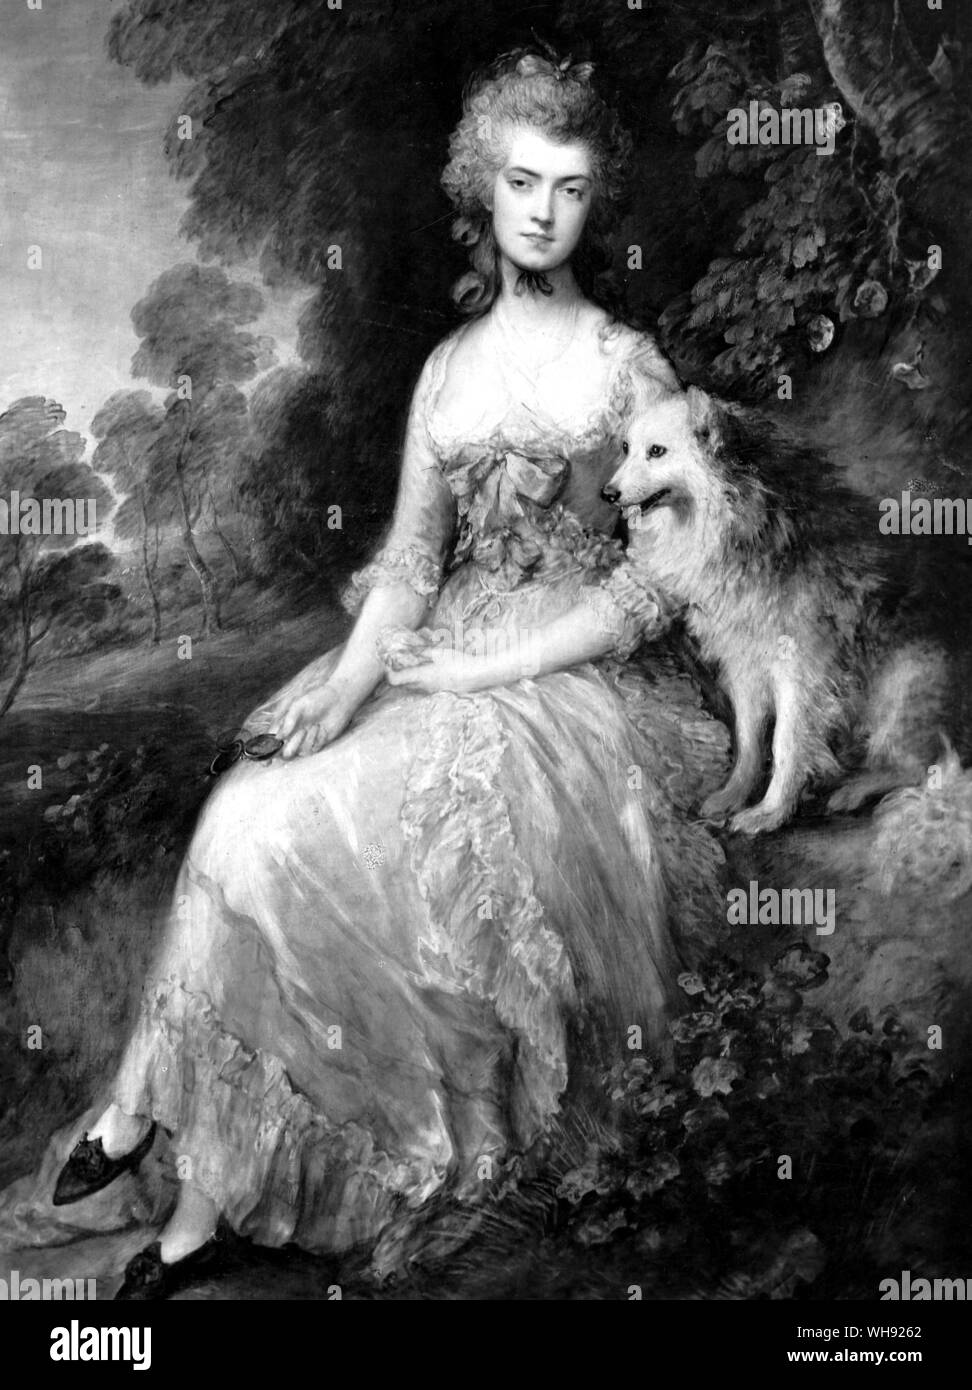 La Sra. Robinson, actriz inglesa, novelista y poeta (1758-1800), Perdita, 1781. Por Thomas Gainsborough (1727-88). La sociedad Inglesa pintor de retratos y paisajes. Foto de stock